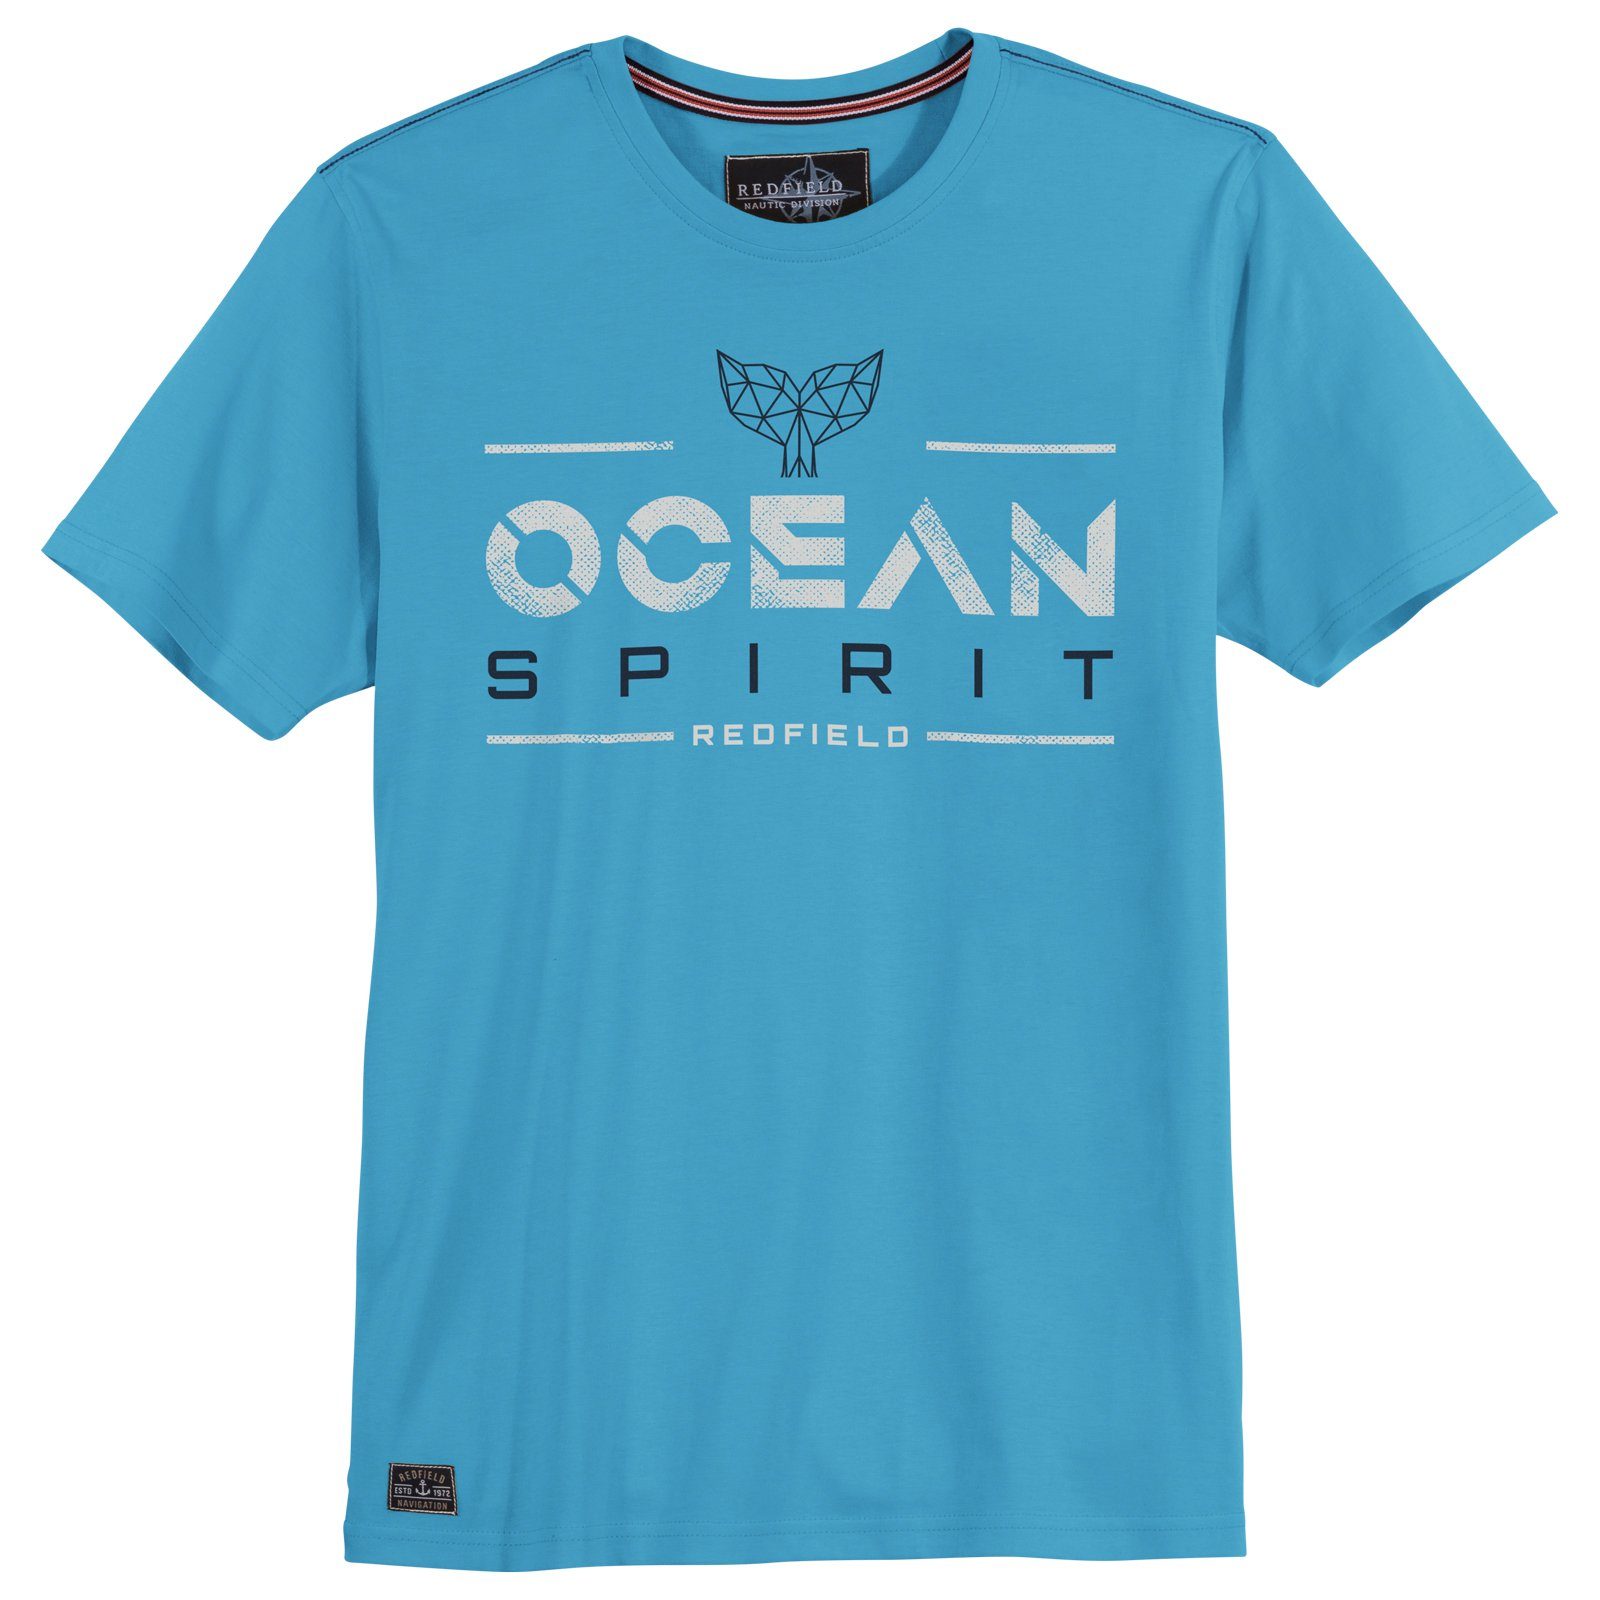 redfield Rundhalsshirt Große Größen Herren T-Shirt azurblau Print Ocean Spirit Redfield